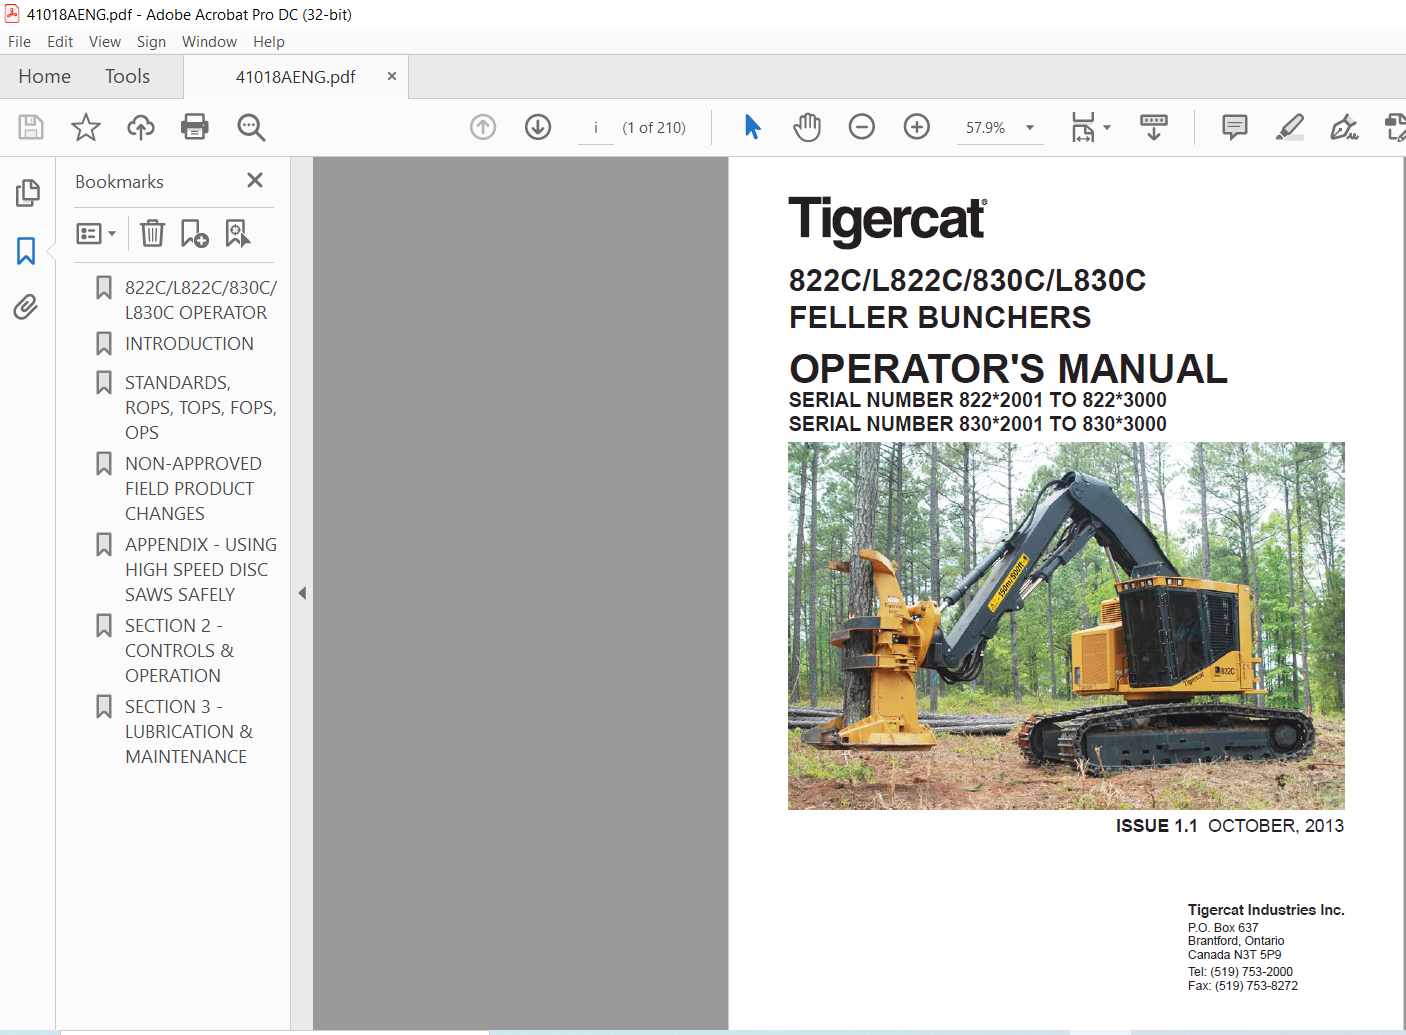 Tigercat C L C C L C Feller Bunchers Operator S Manual Pdf